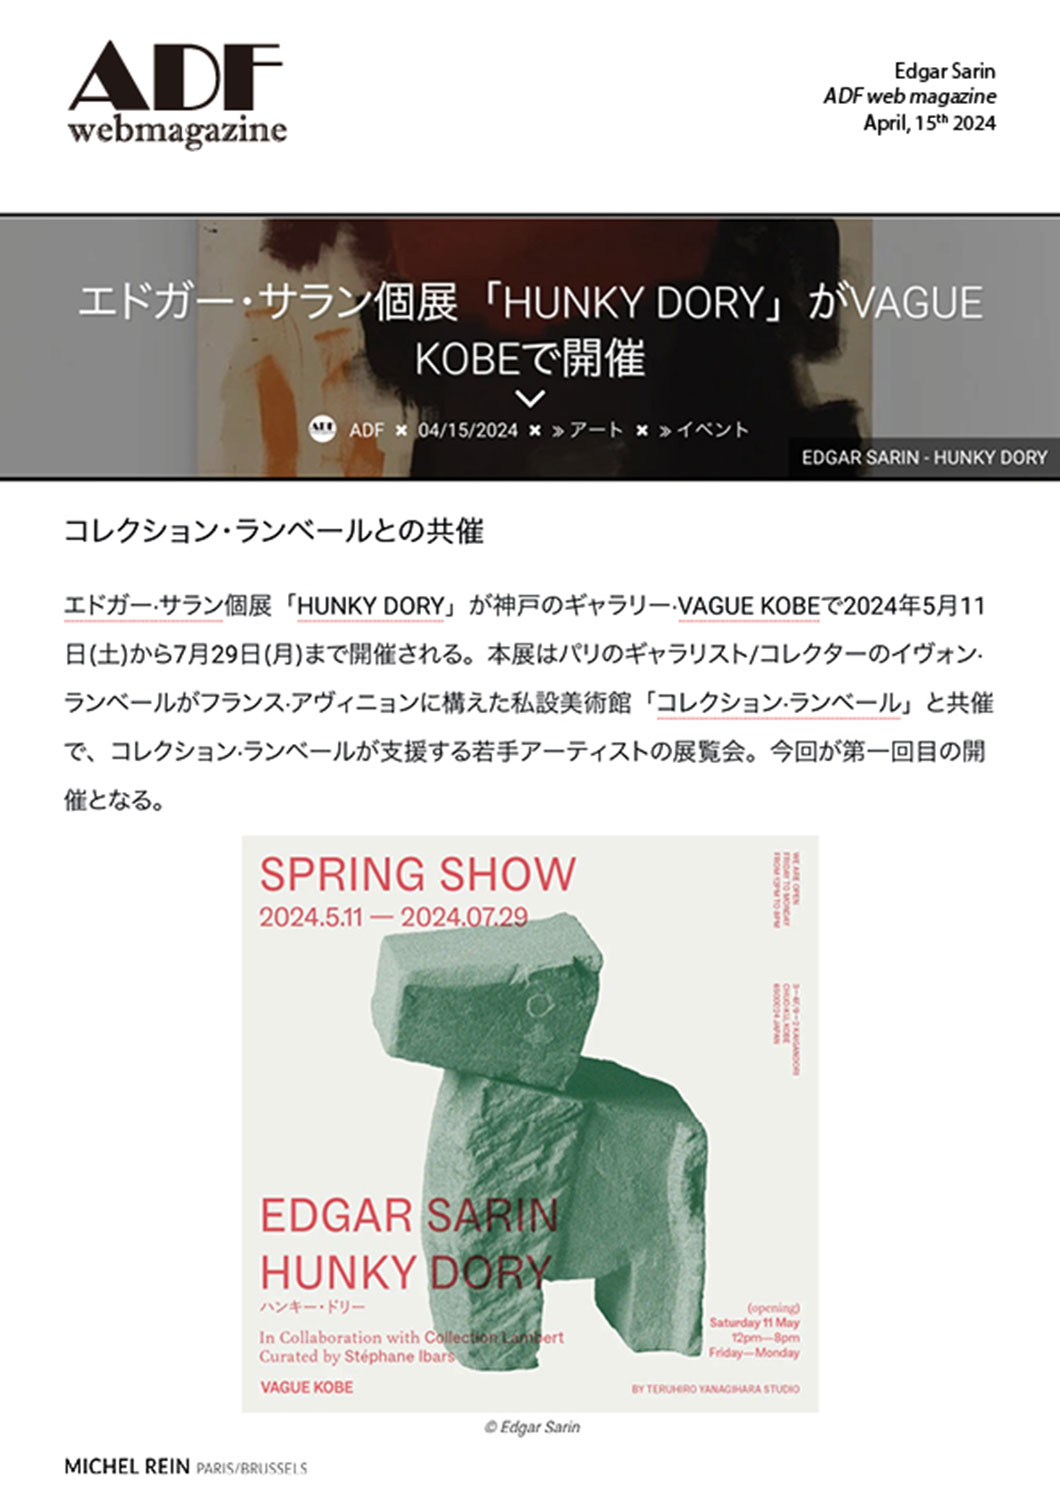 Edgar Sarin solo exhibition 'HUNKY DORY' at VAGUE KOBE - ADF